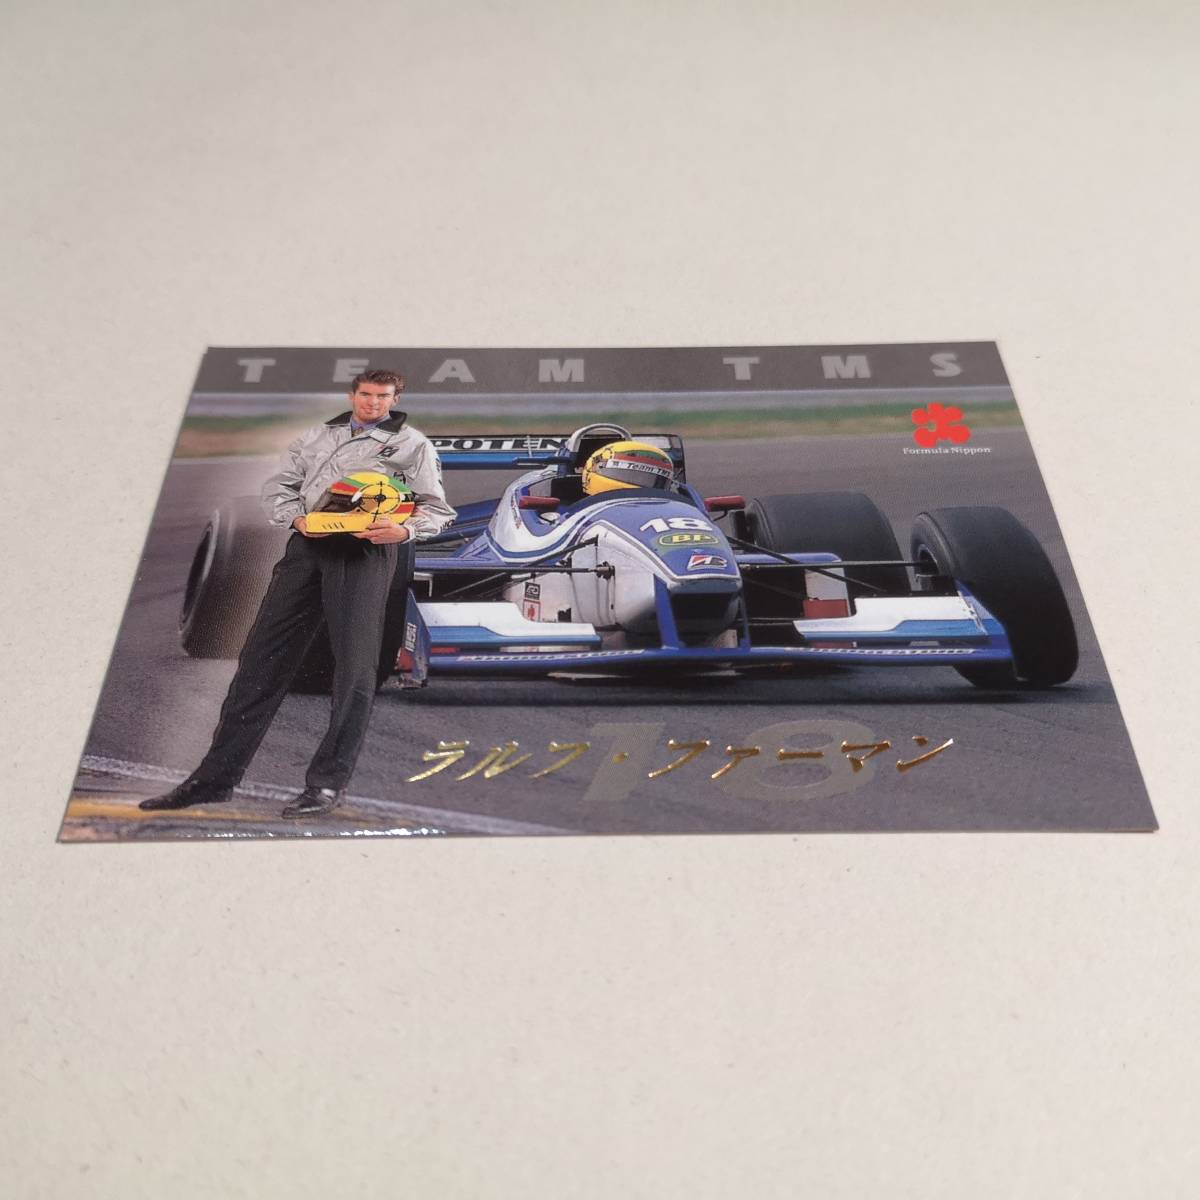 ◆97 Formula Nippon コレクションカード「TEAM TMS ラルフ・ファーマン」S-12◆エポック社 1997年/フォーミュラニッポン/CA車_画像4